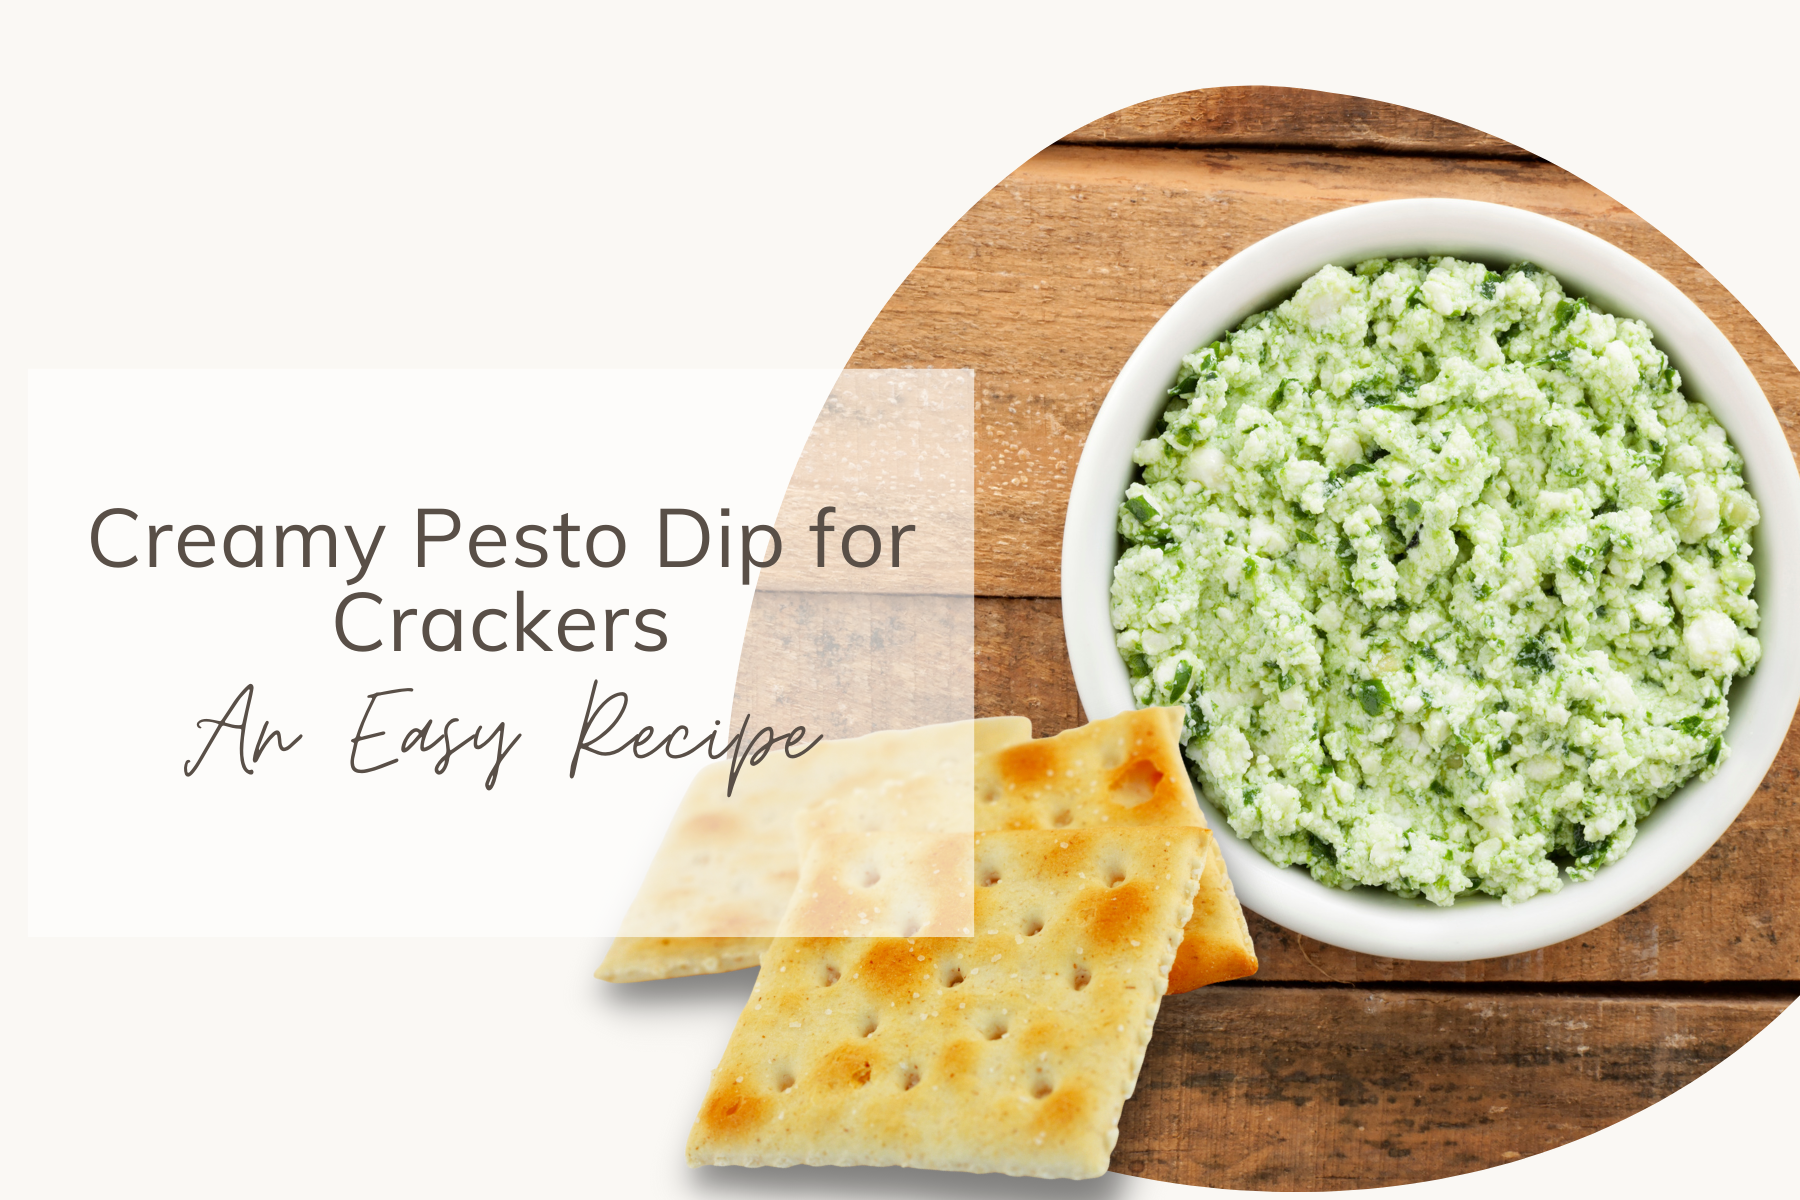 Creamy Pesto Dip for Crackers - An Easy Recipe